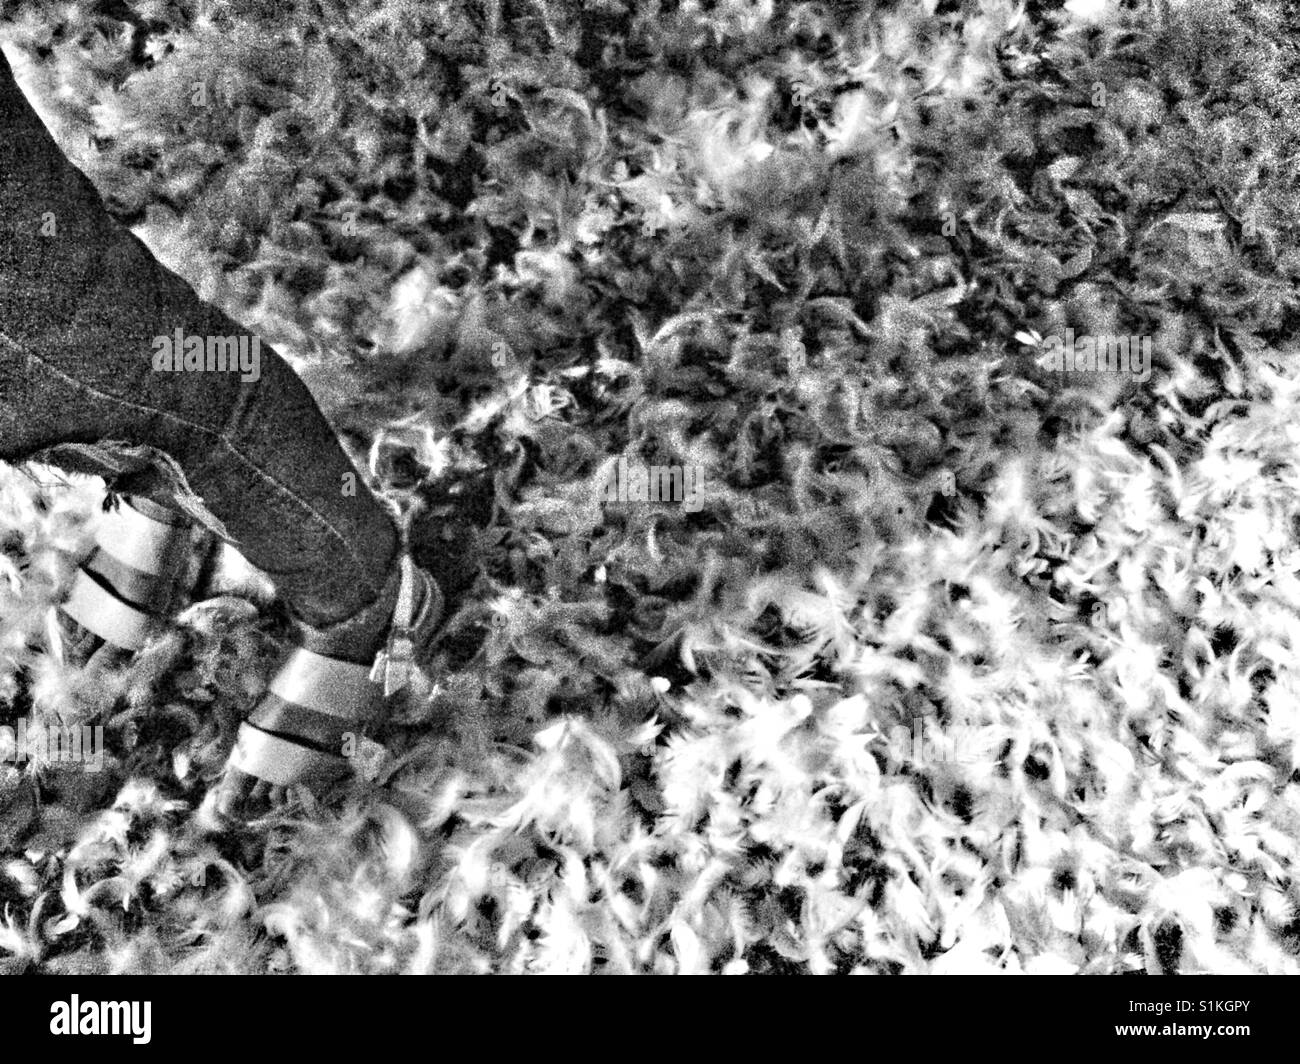 Pieds de femme debout sur le sol recouvert de plumes blanches. Banque D'Images